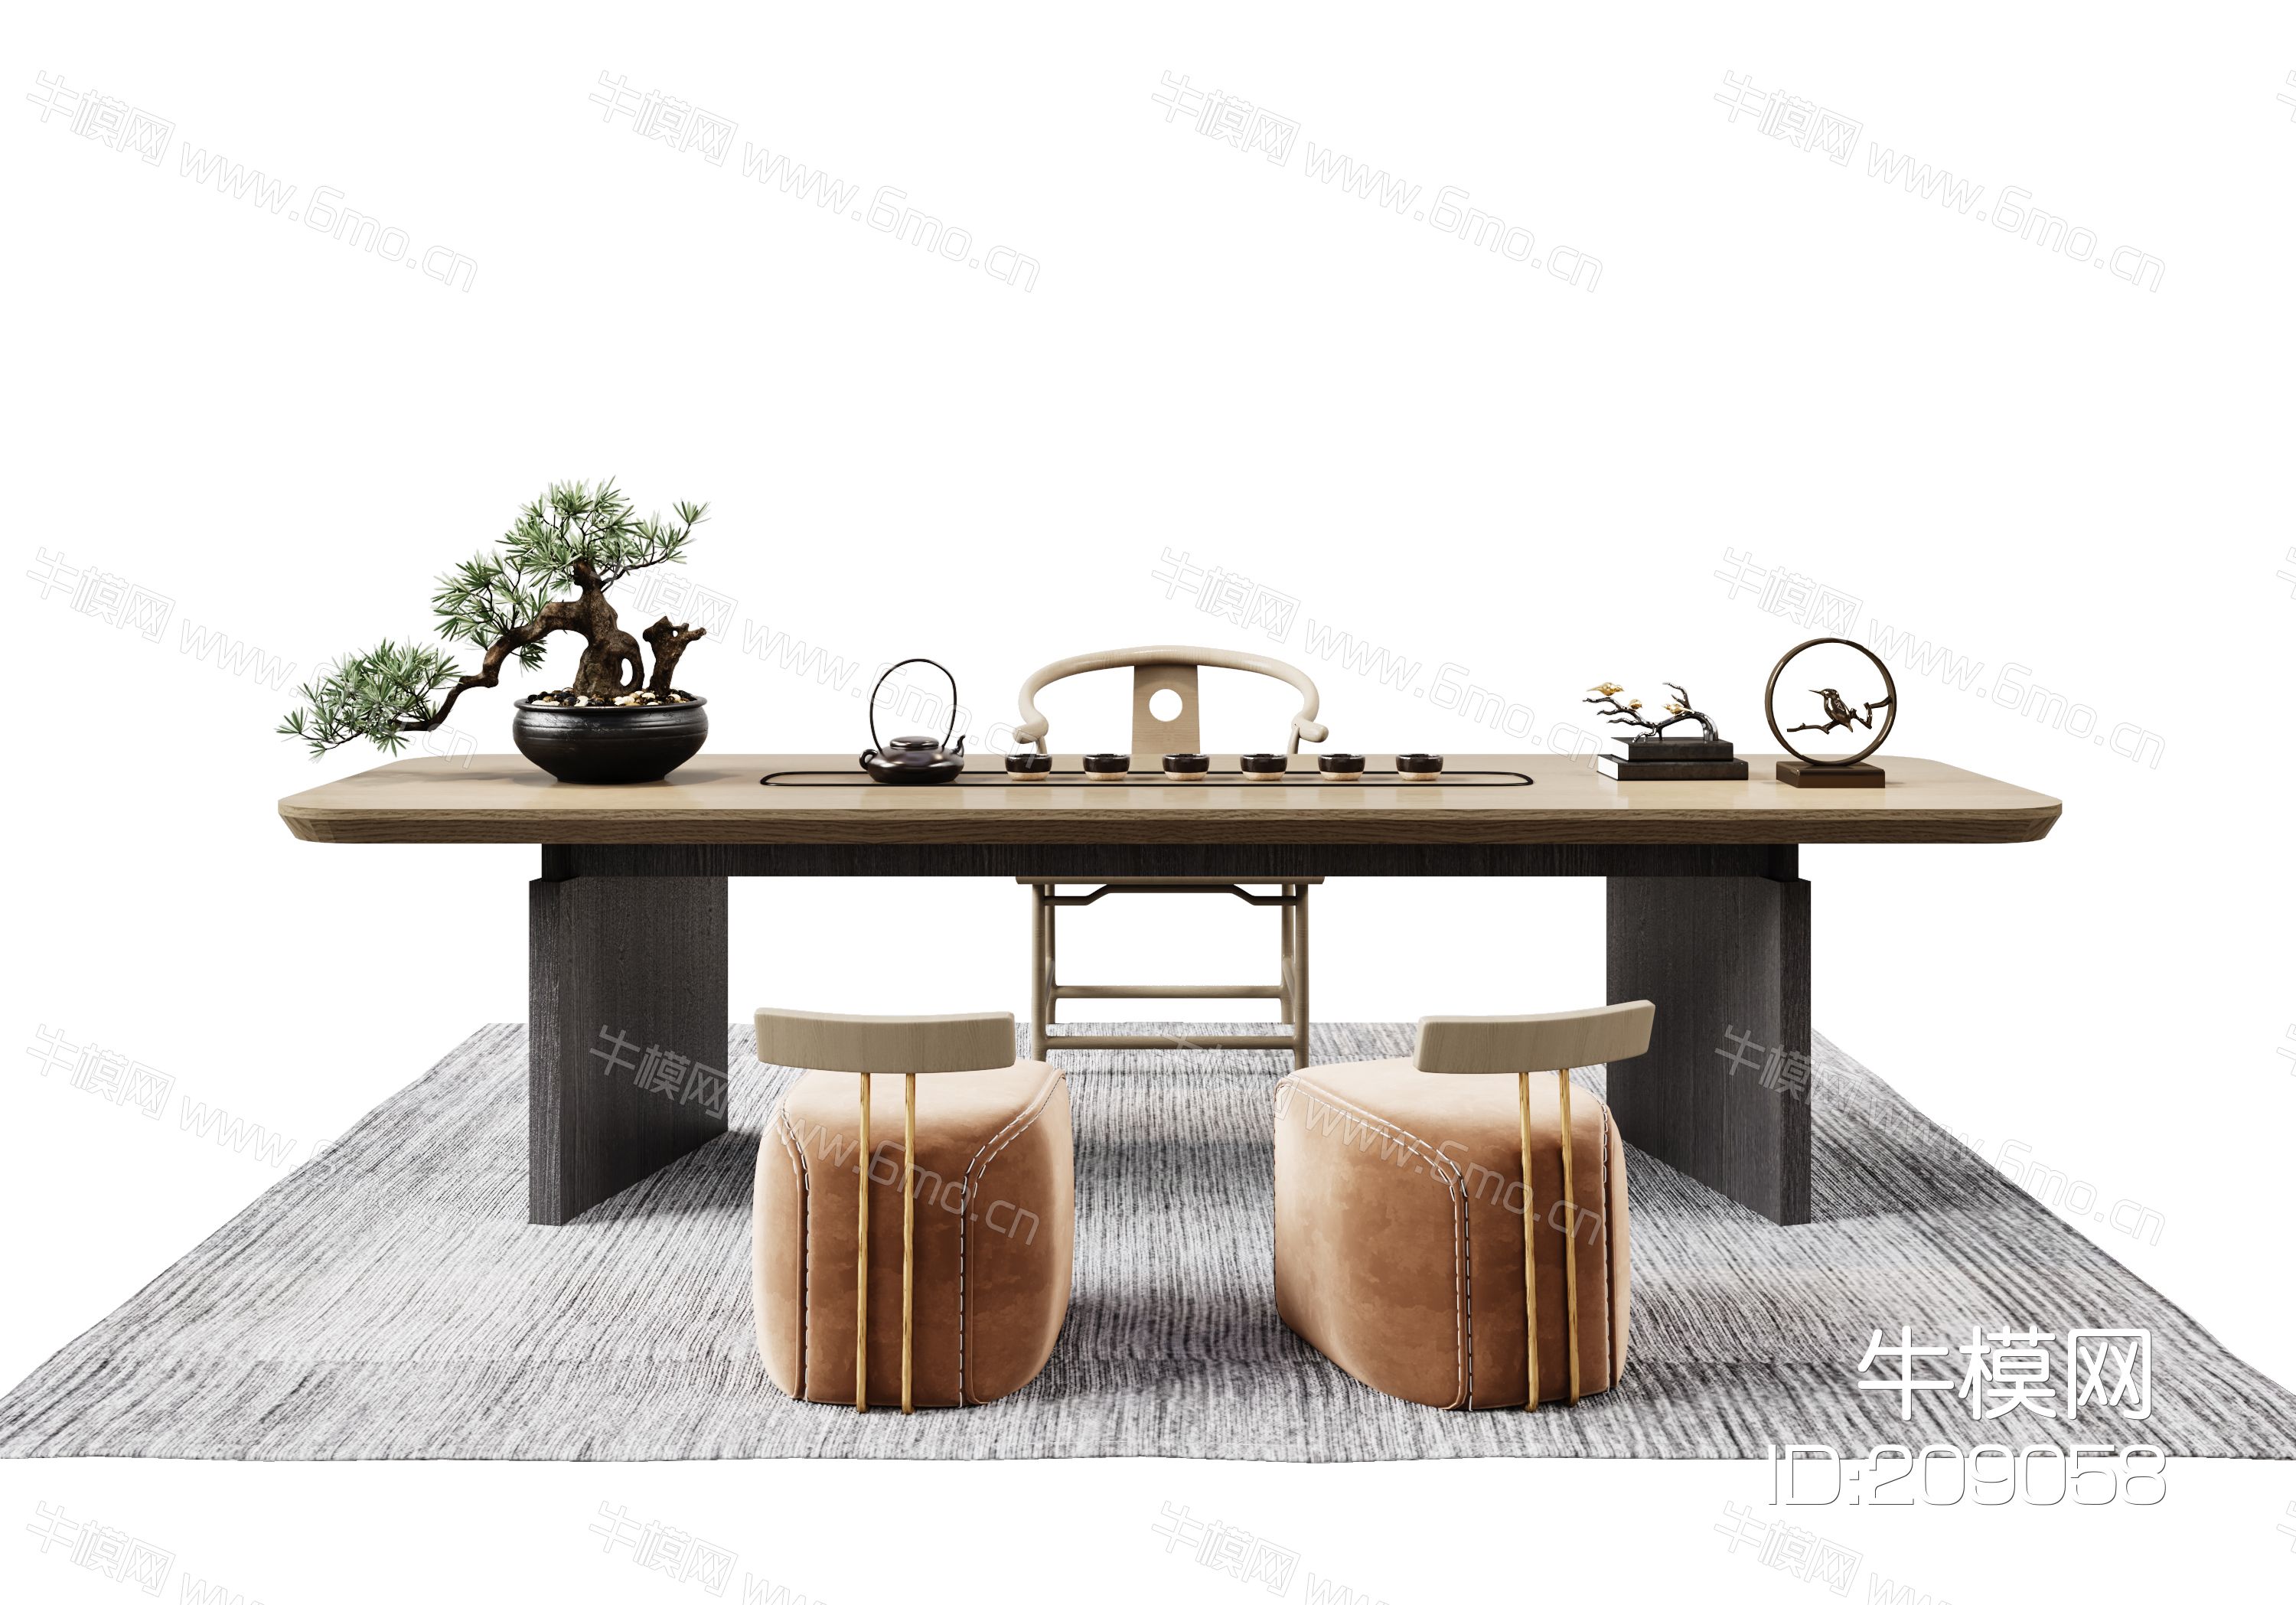 新中式茶桌椅组合  凳子  茶具  茶壶  单椅  地毯